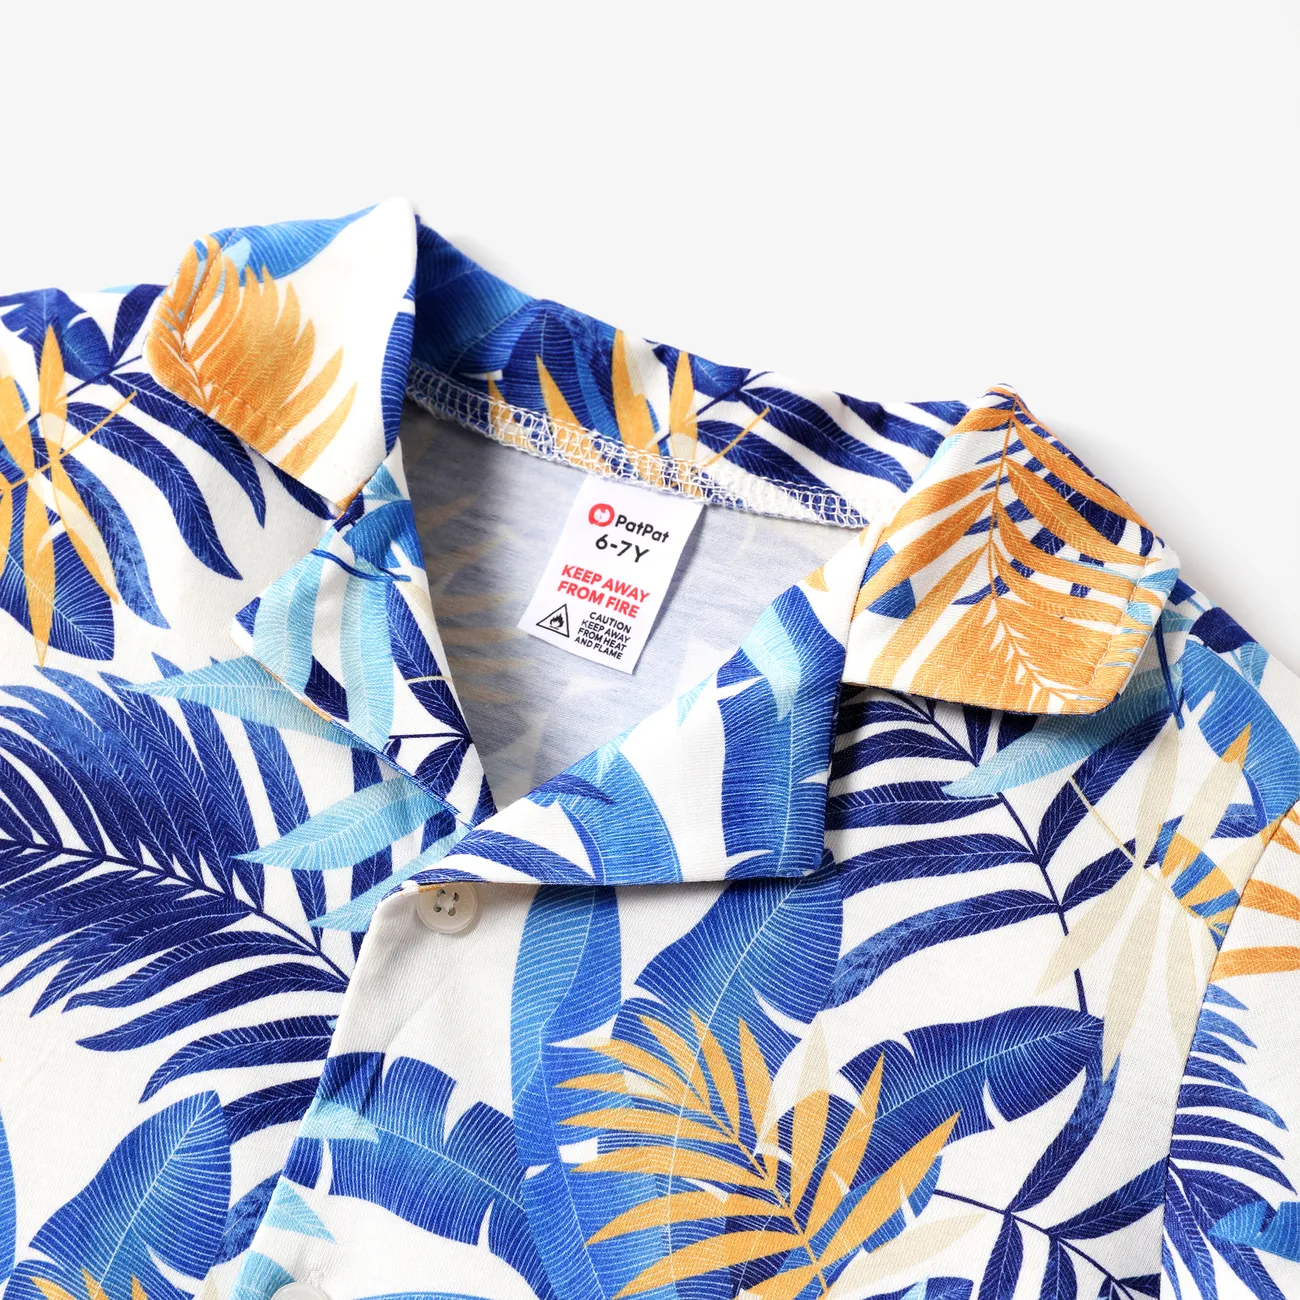 Kid Boy 2pcs Tropische Pflanzen Print Pyjama Shirt und Shorts Set blau big image 1